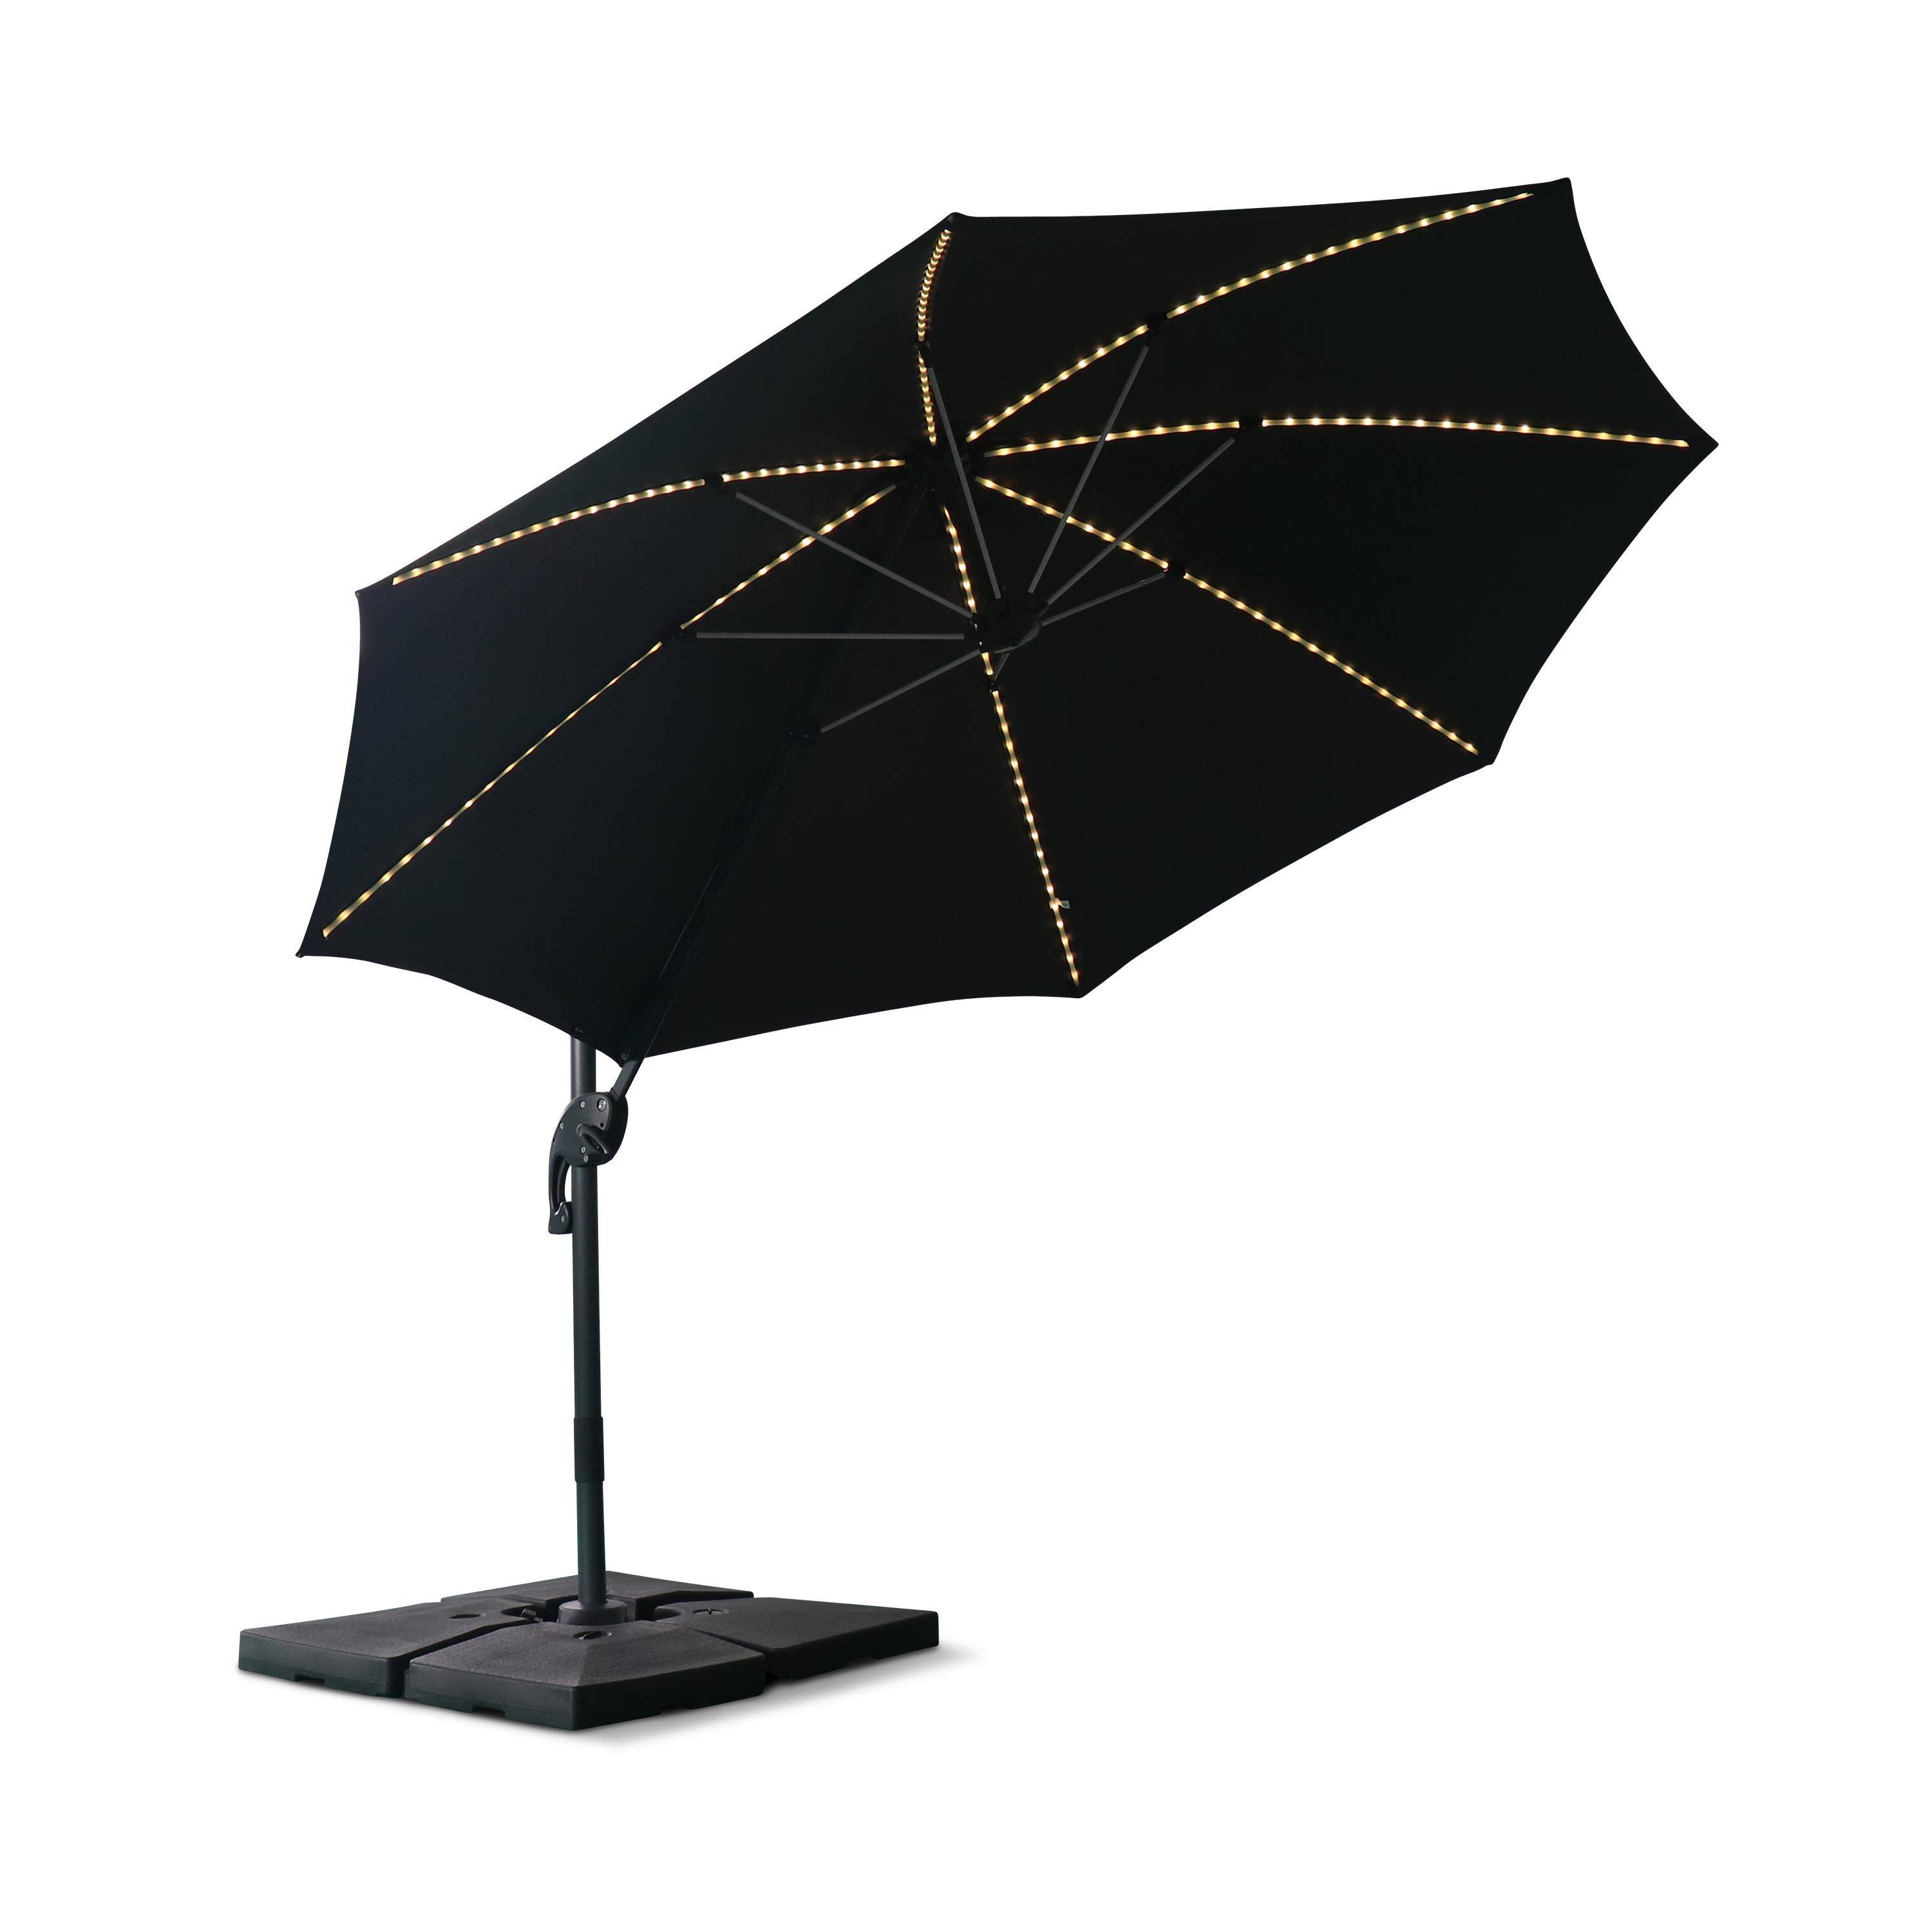 Ombrellone led tondo decentrato Ø300 cm - Dinard - Grigio - ombrellone decentrato, basculante, ribaltabile e girevole 360°, stecche in fibra di vetro Photo5